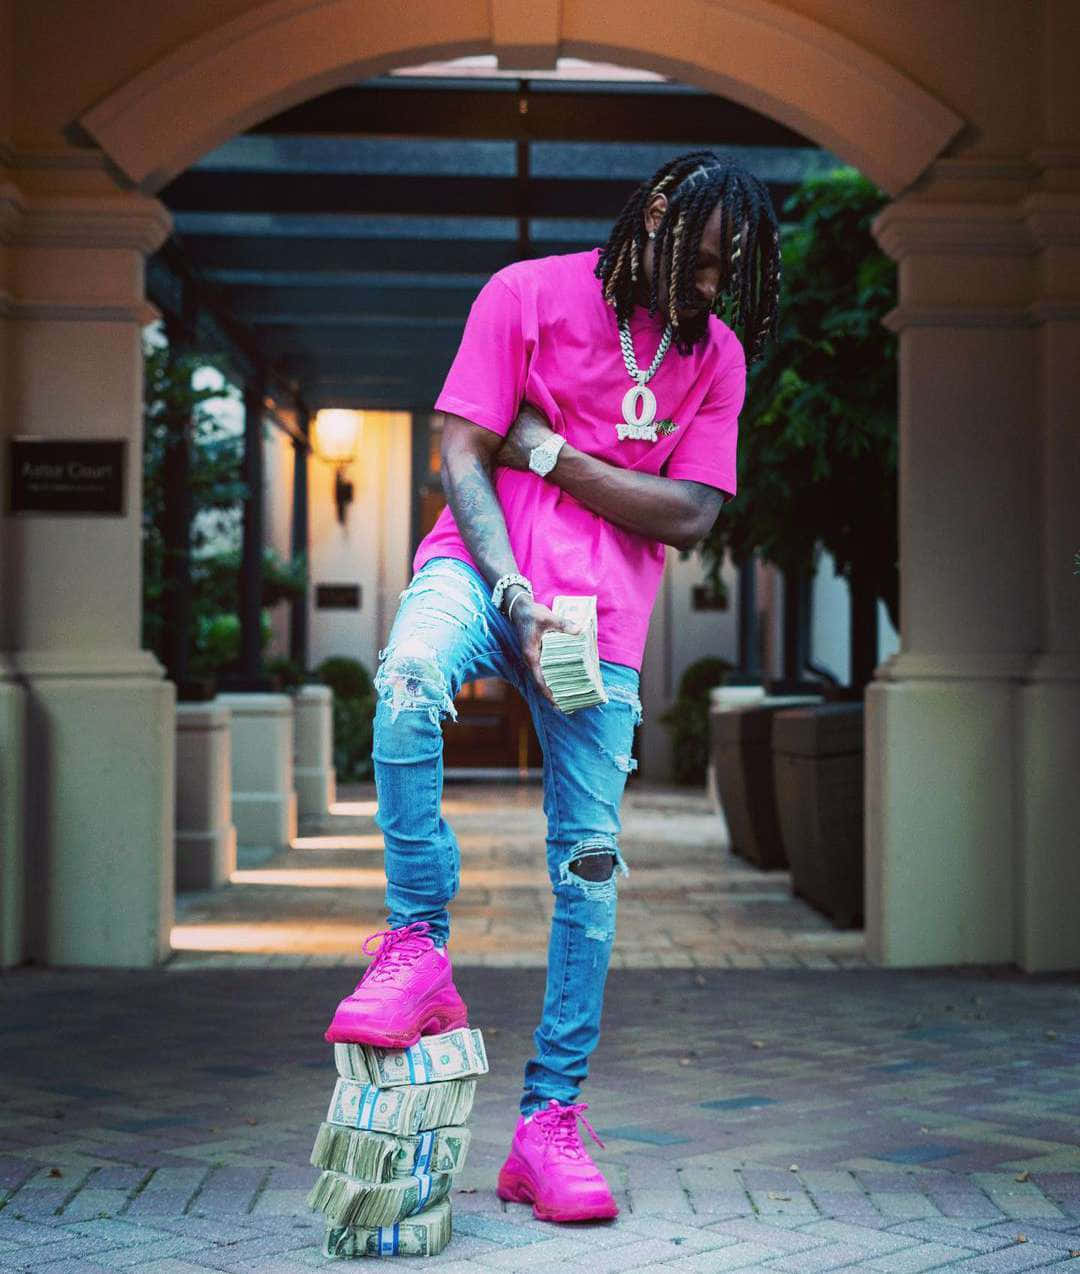 Man Standingon Money Stacks Wearing Pink Shirt Wallpaper